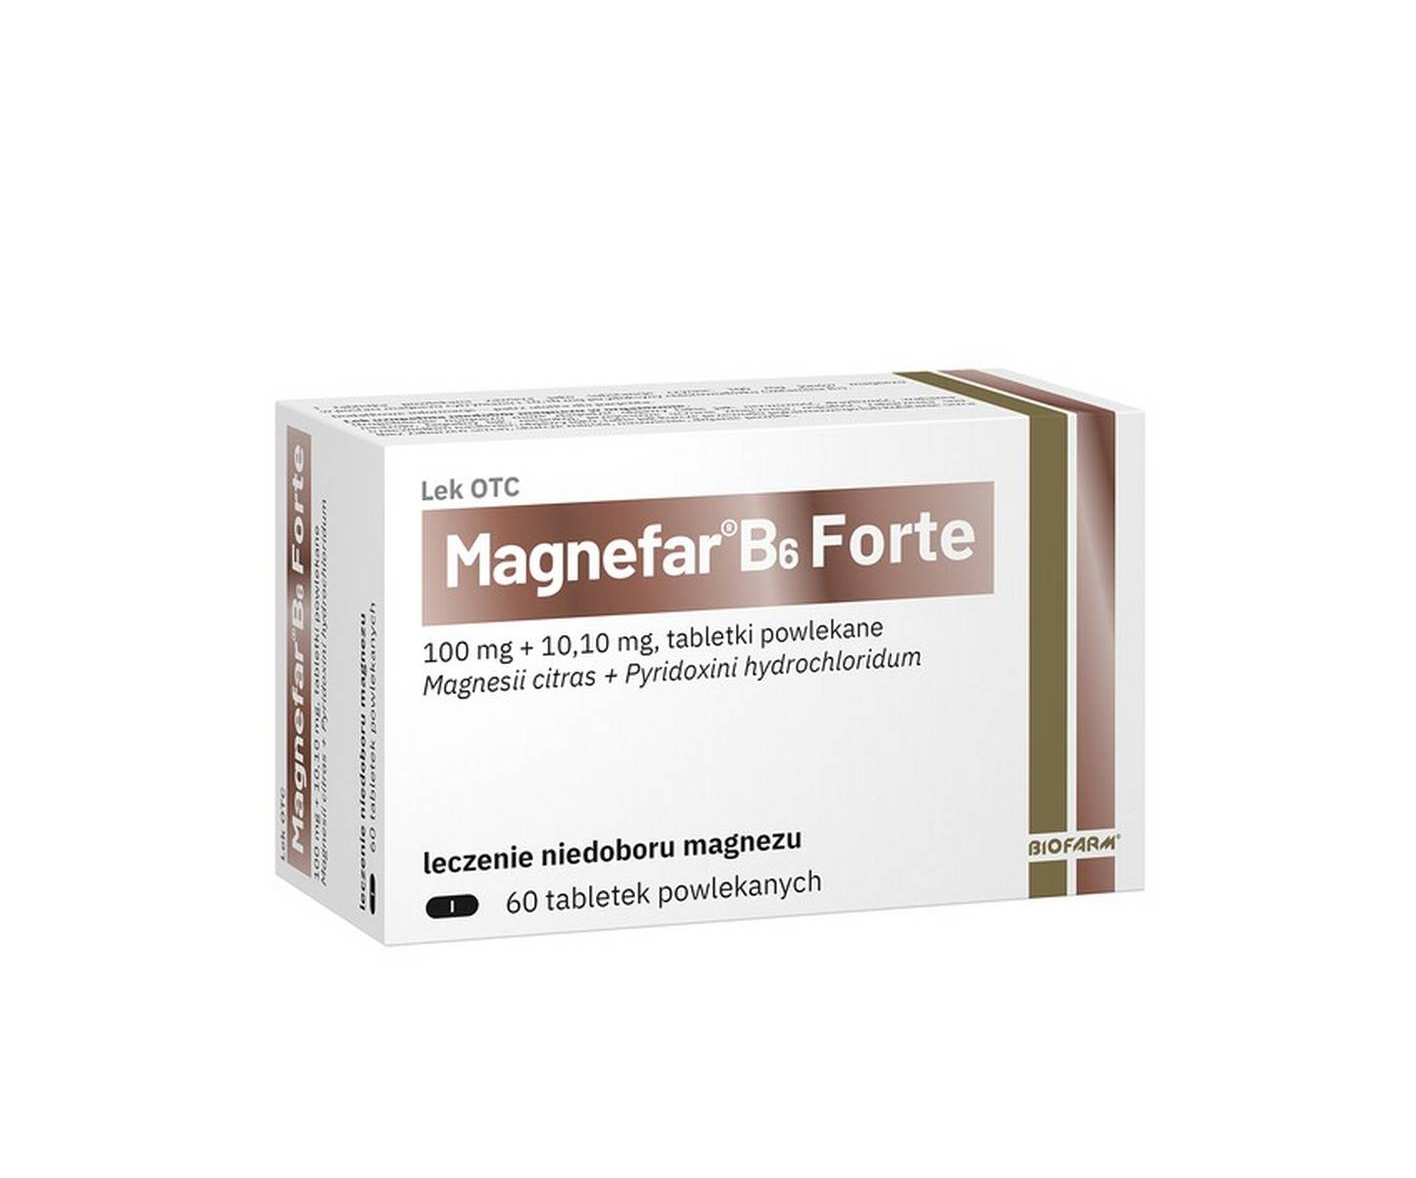 Biofarm, Magnefar B6 Forte, suplement diety, 60 tabletek